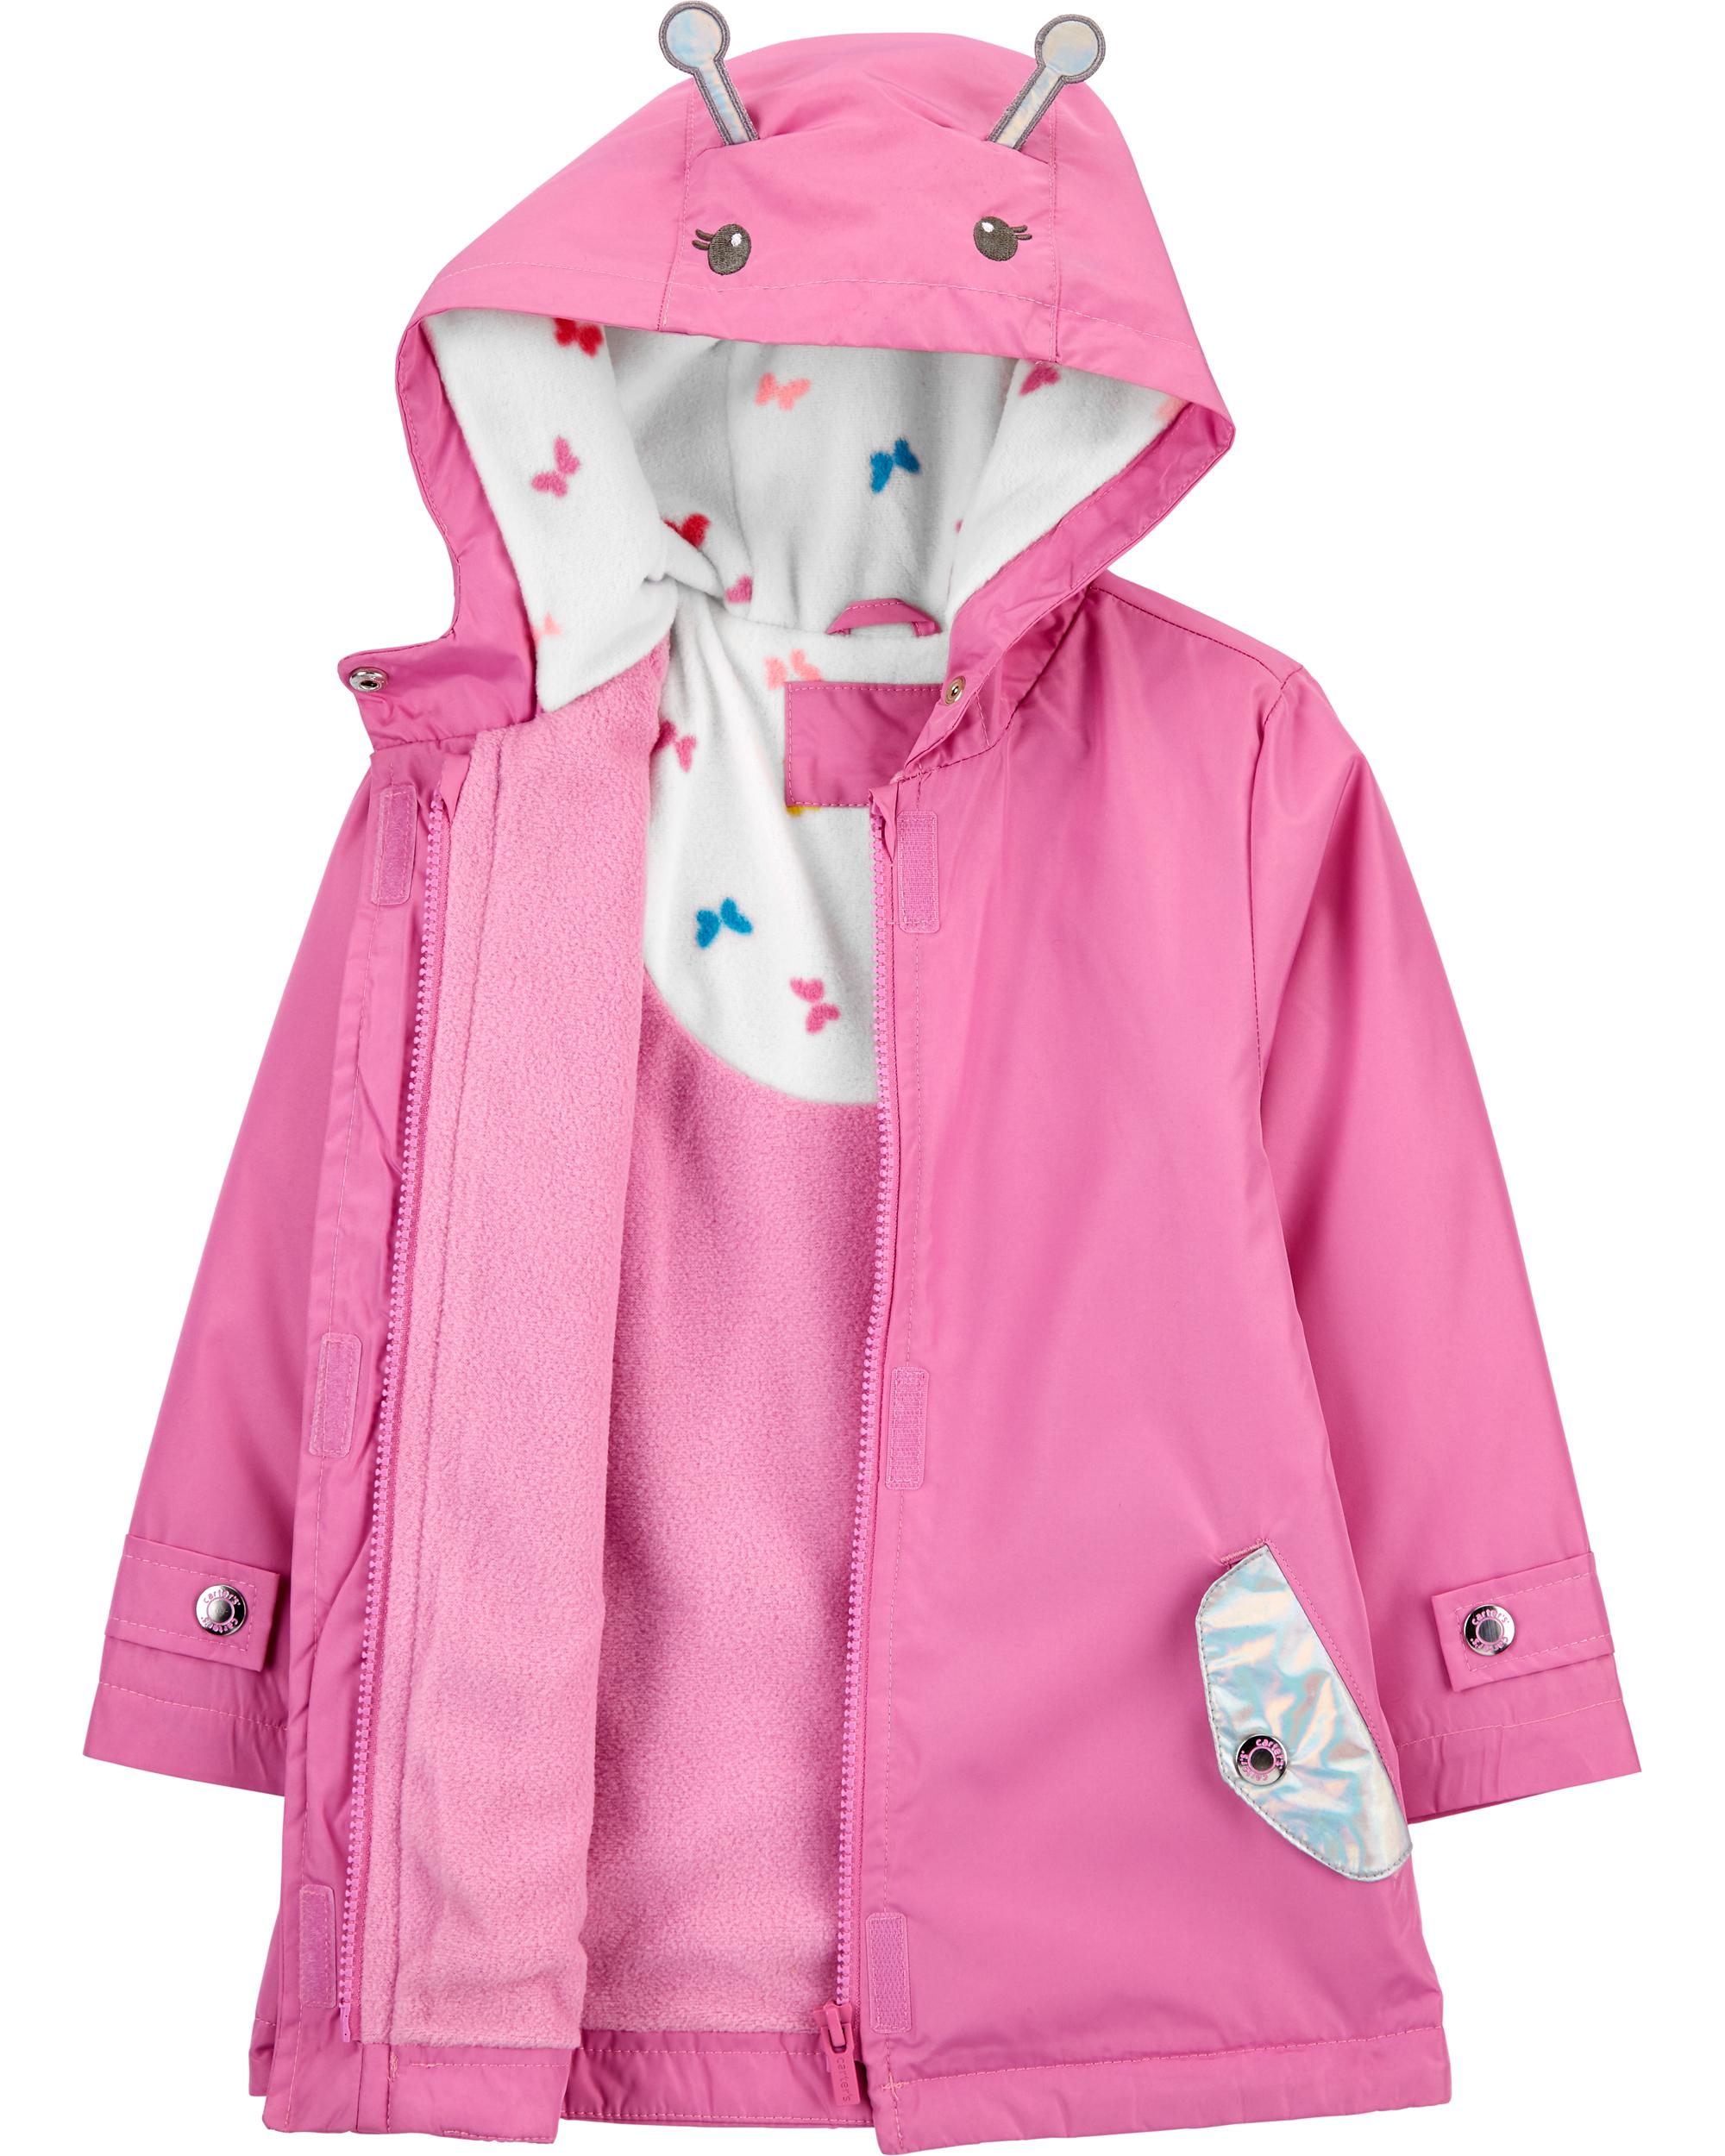 lined rain jacket with hood